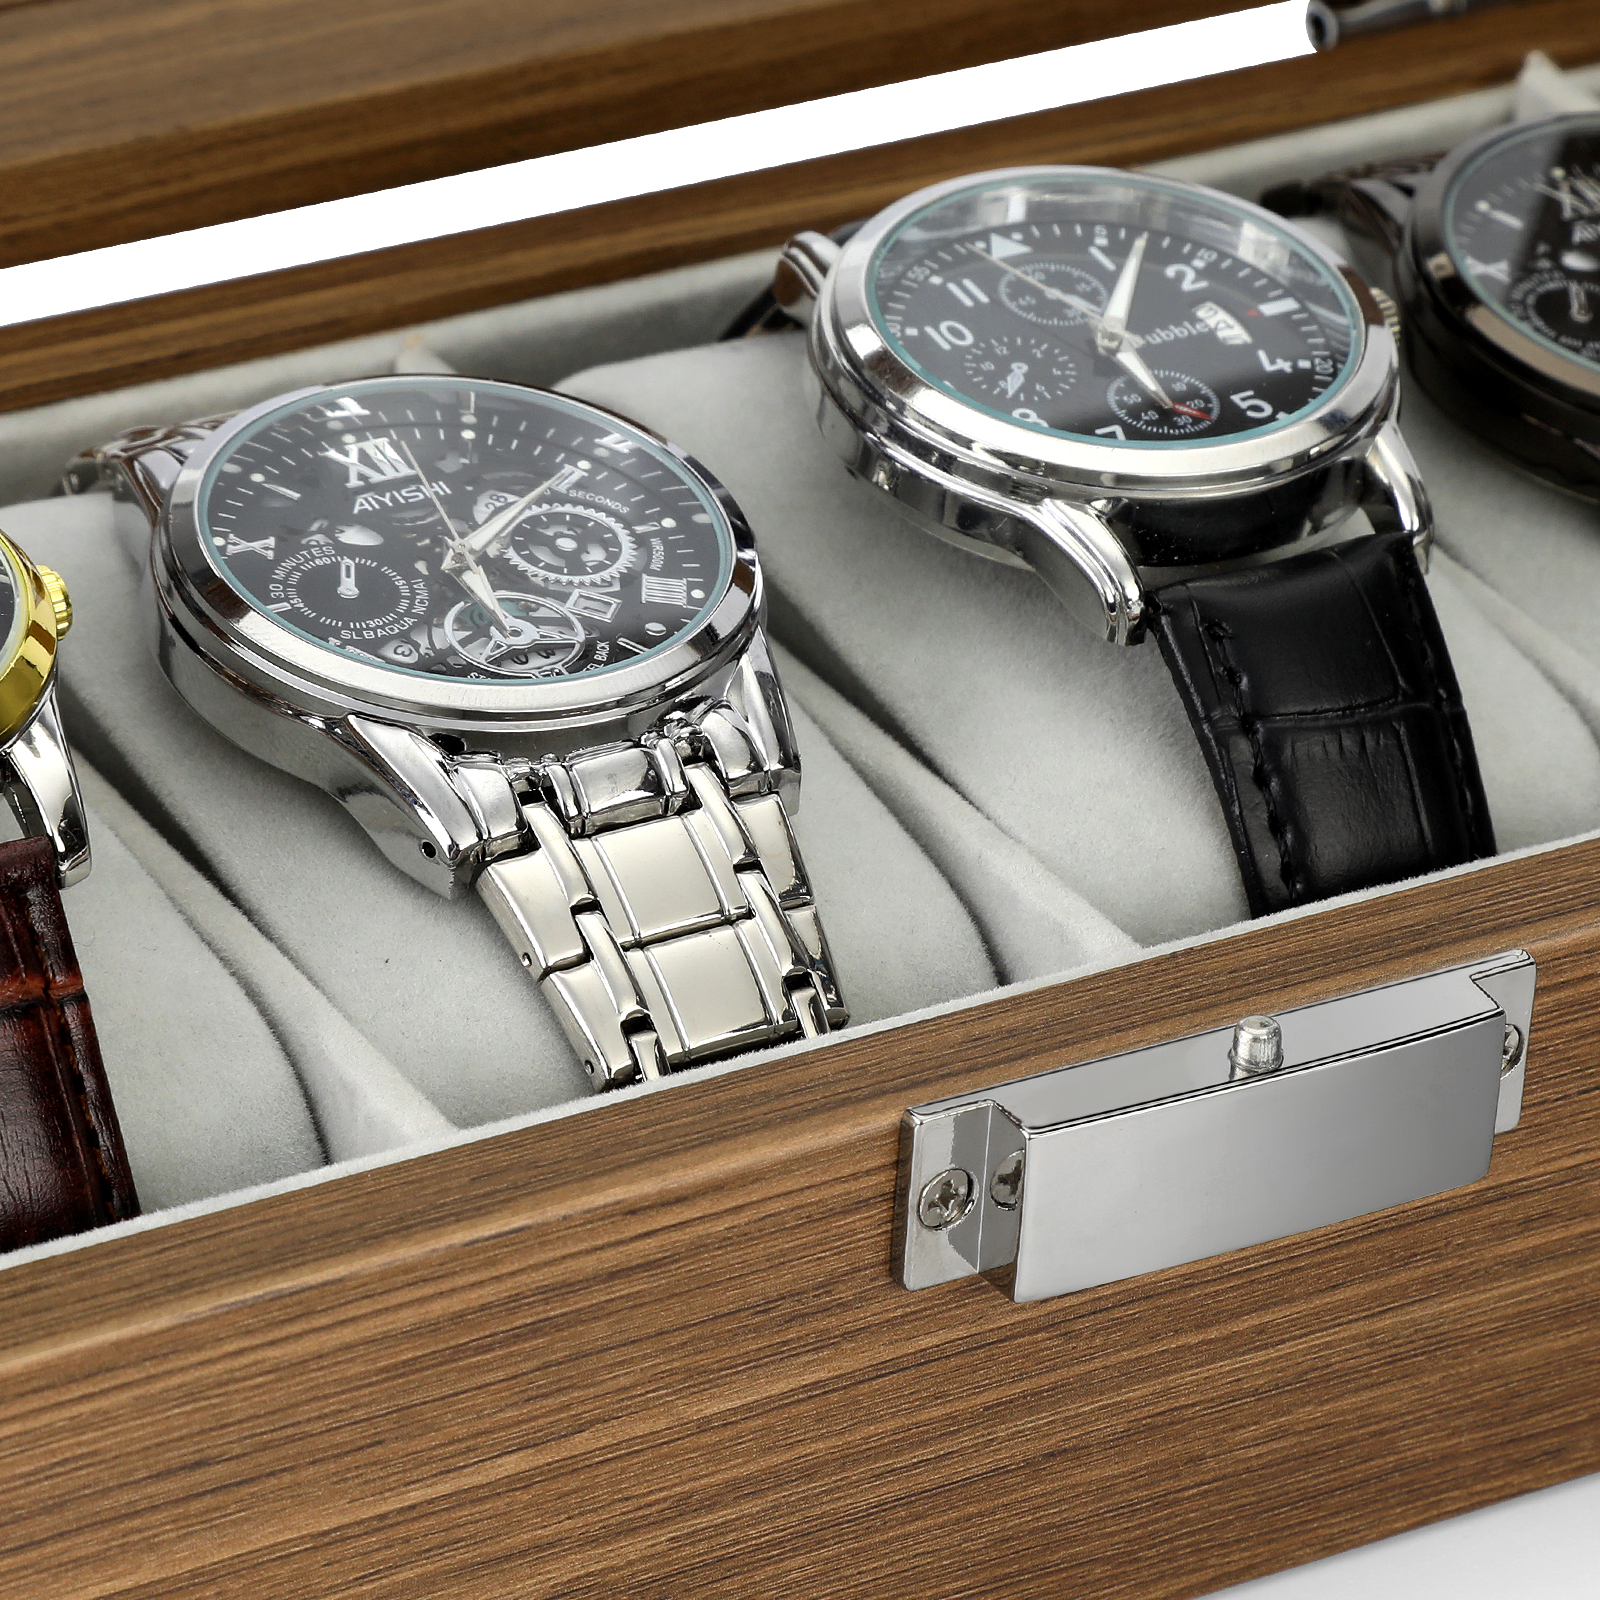 Men's 6-Slot Wood Watch Display Case